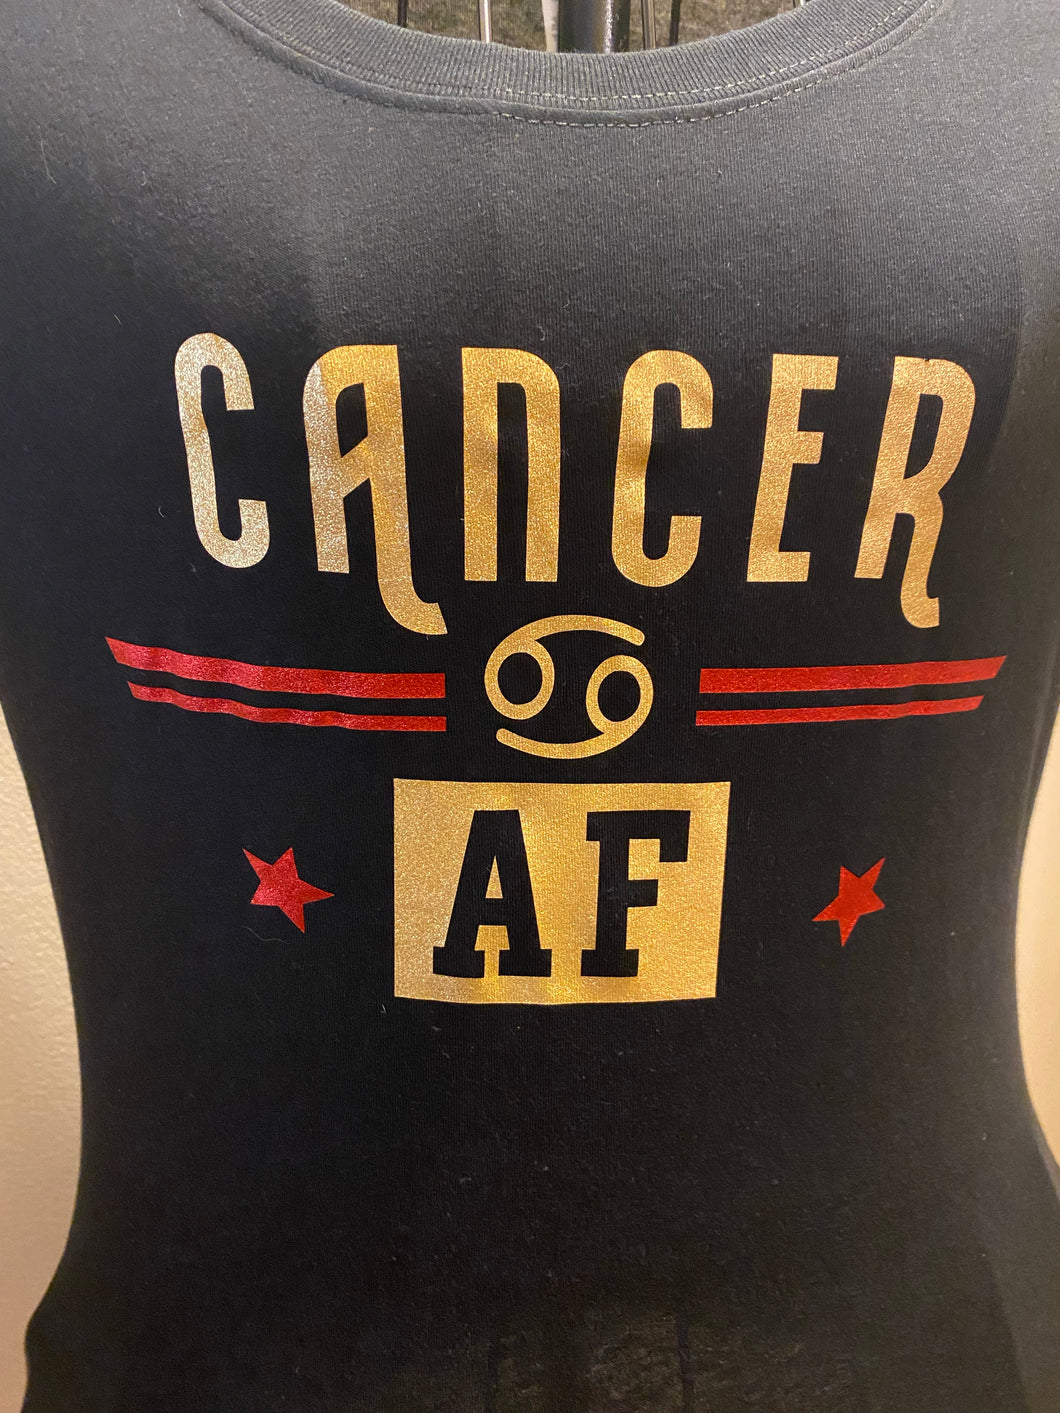 Cancer AF